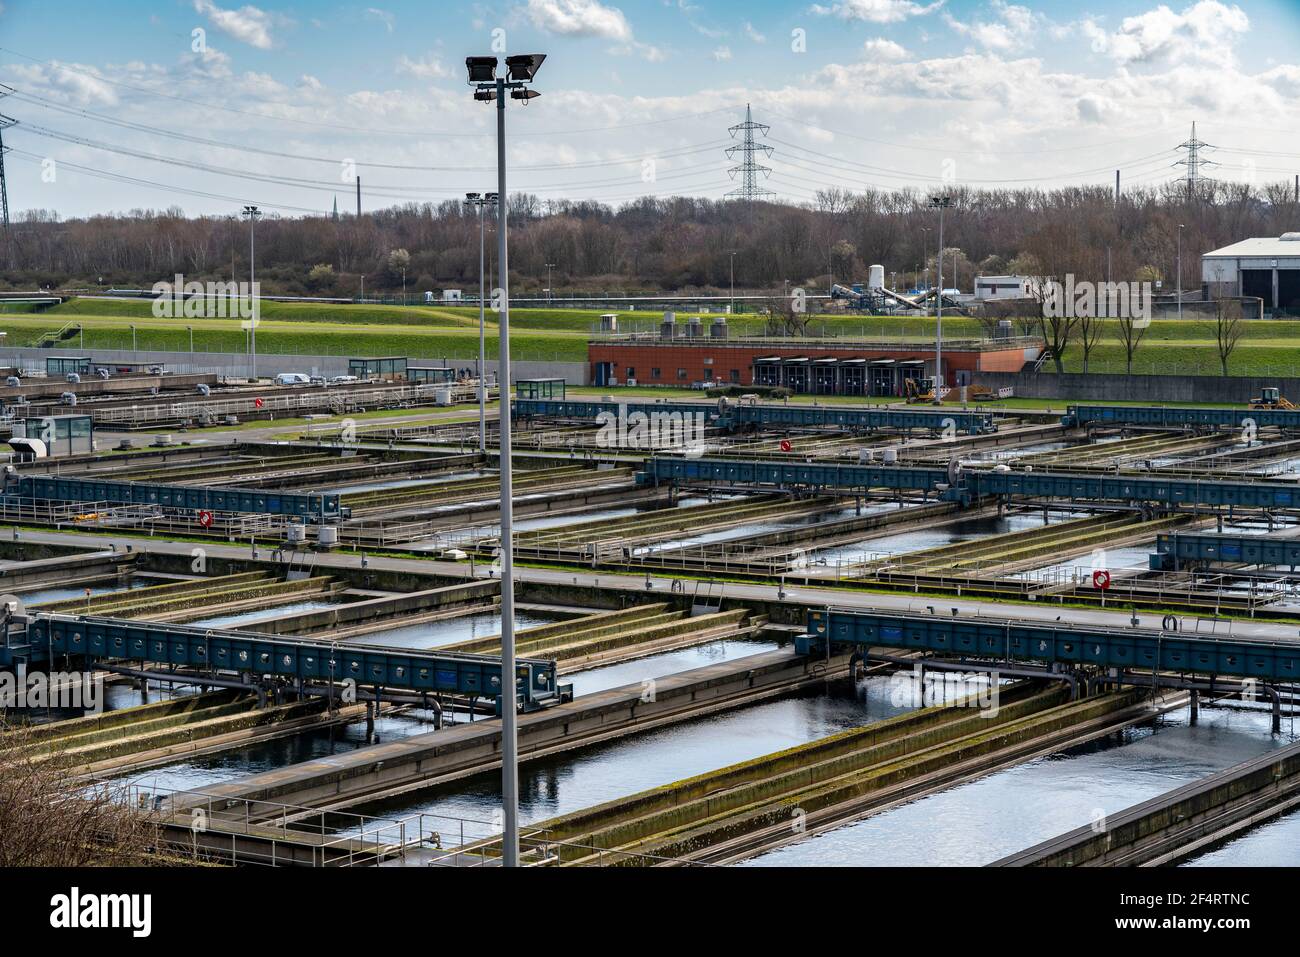 Secondary clarifier, Emschergenossenschaft wastewater treatment plant in Weilheimer Mark in Bottrop, NRW, Germany Stock Photo